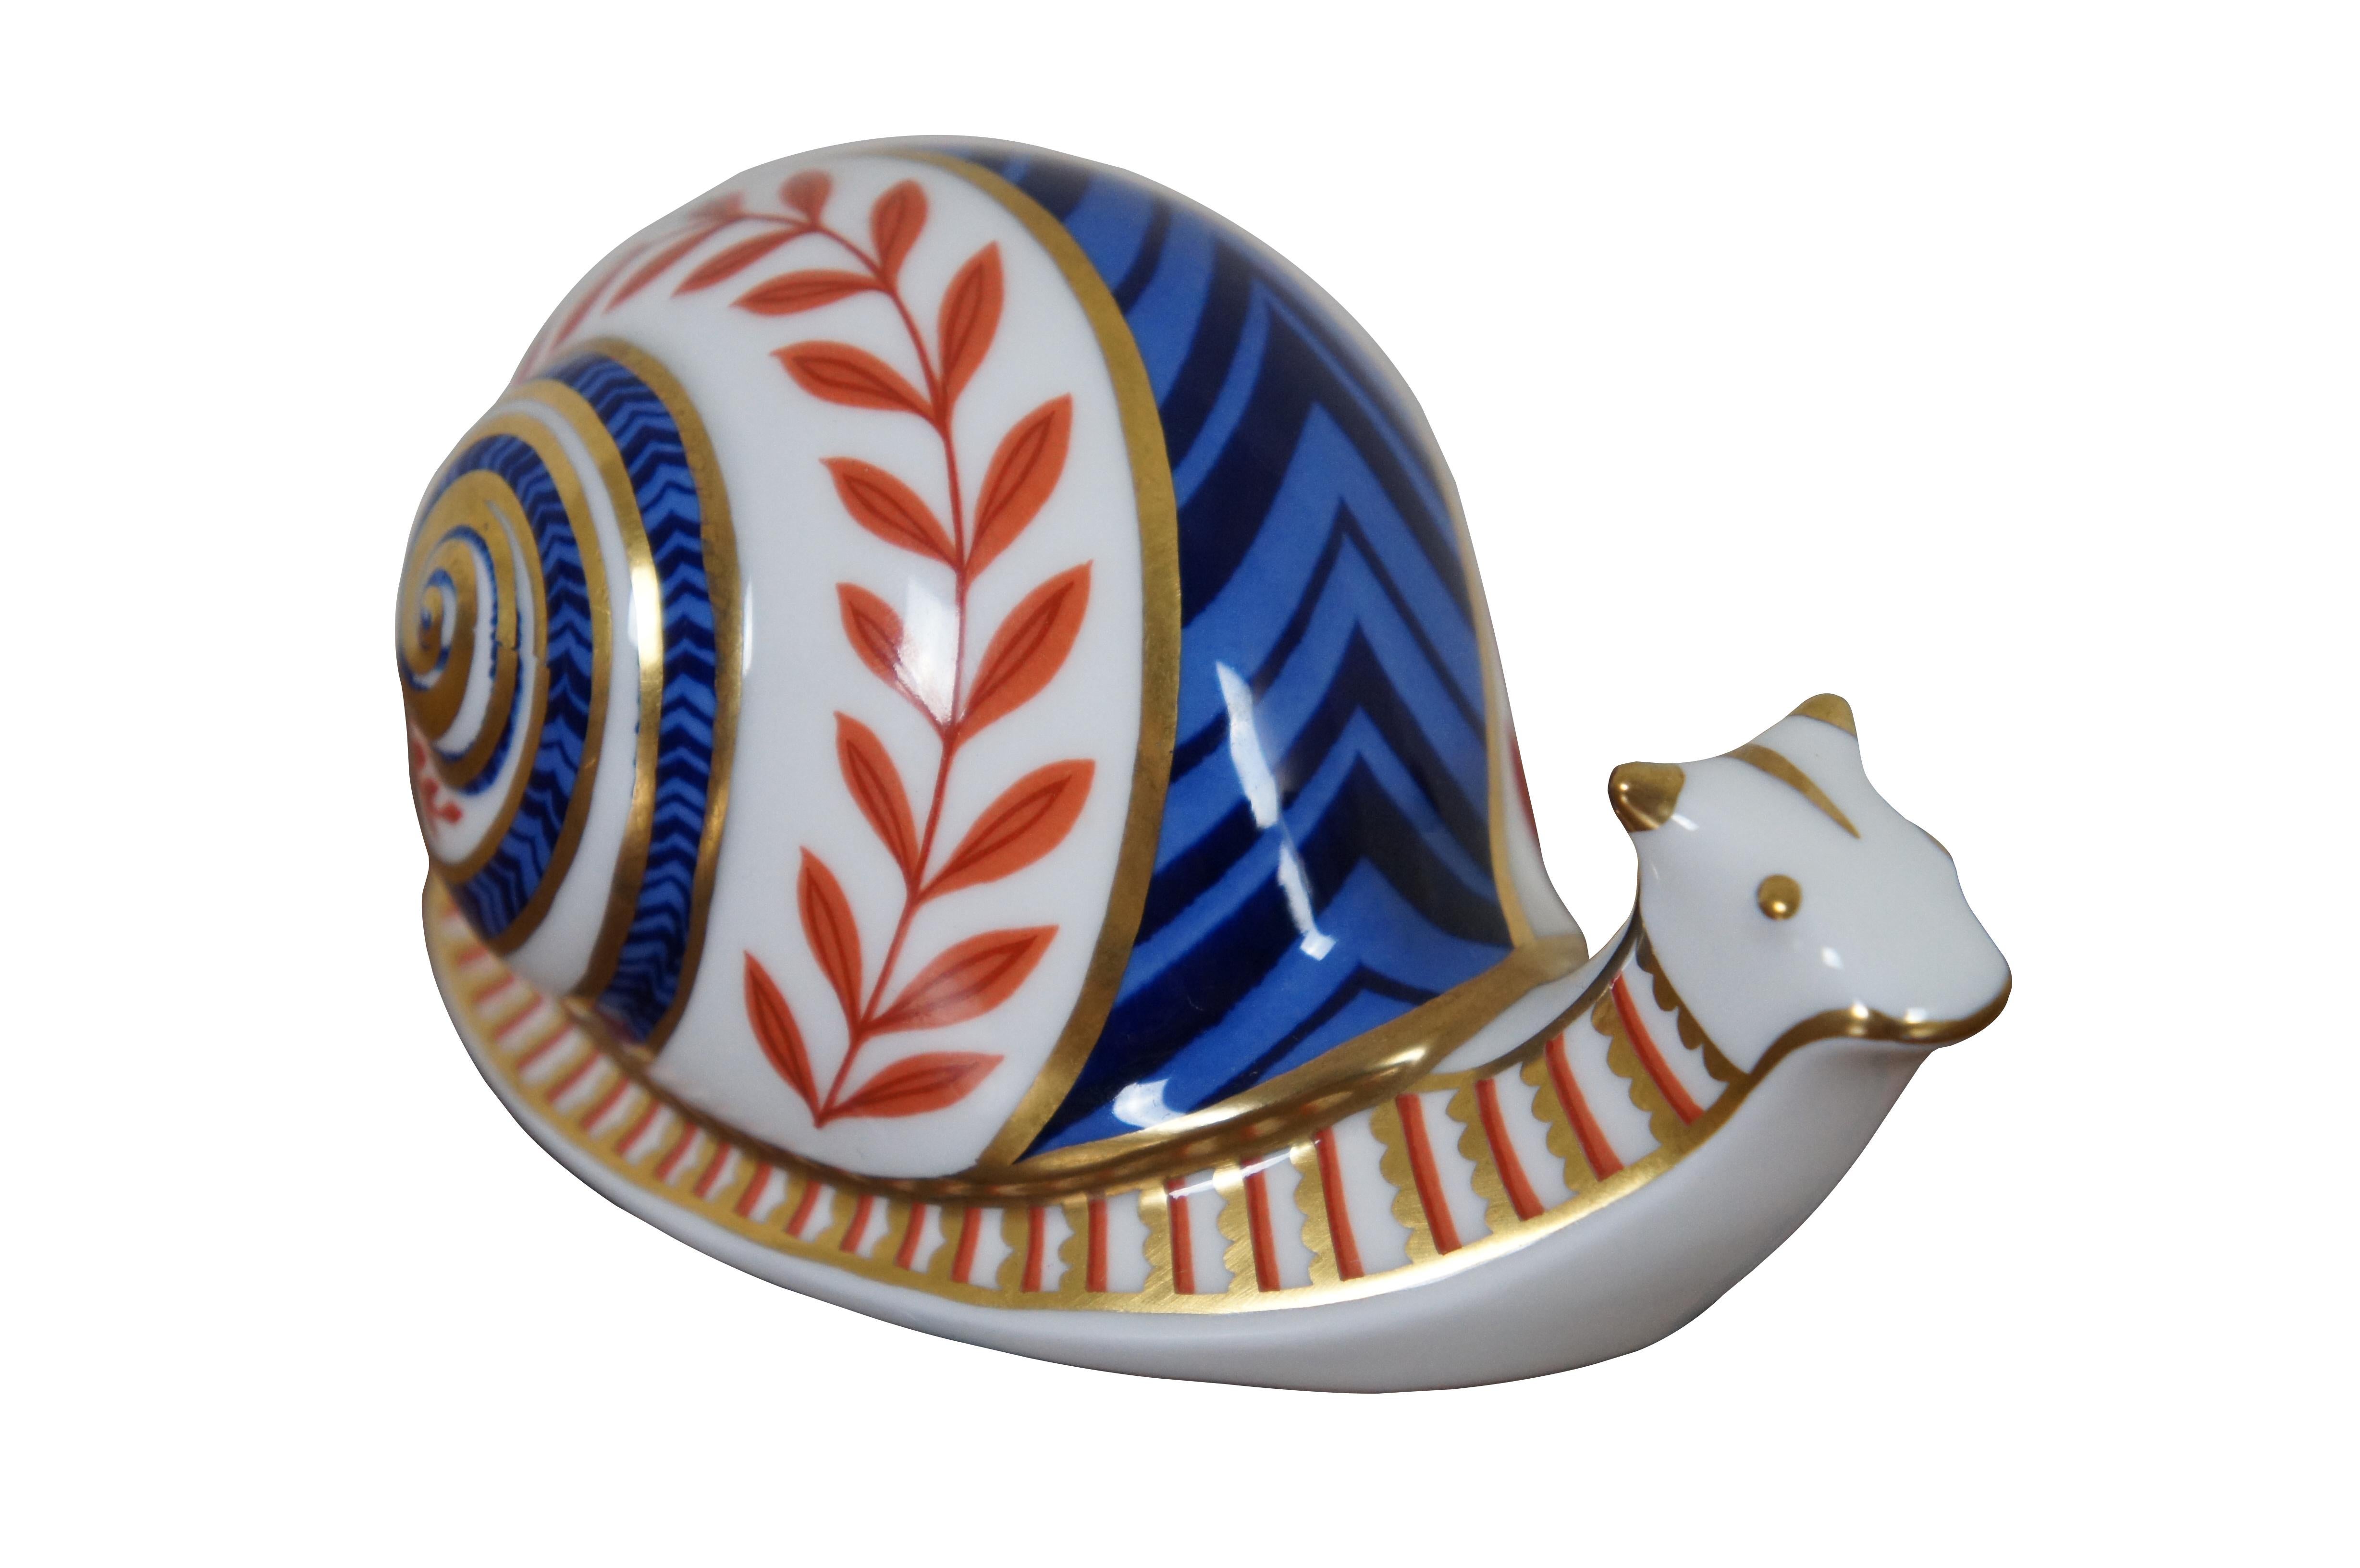 royal crown derby snail